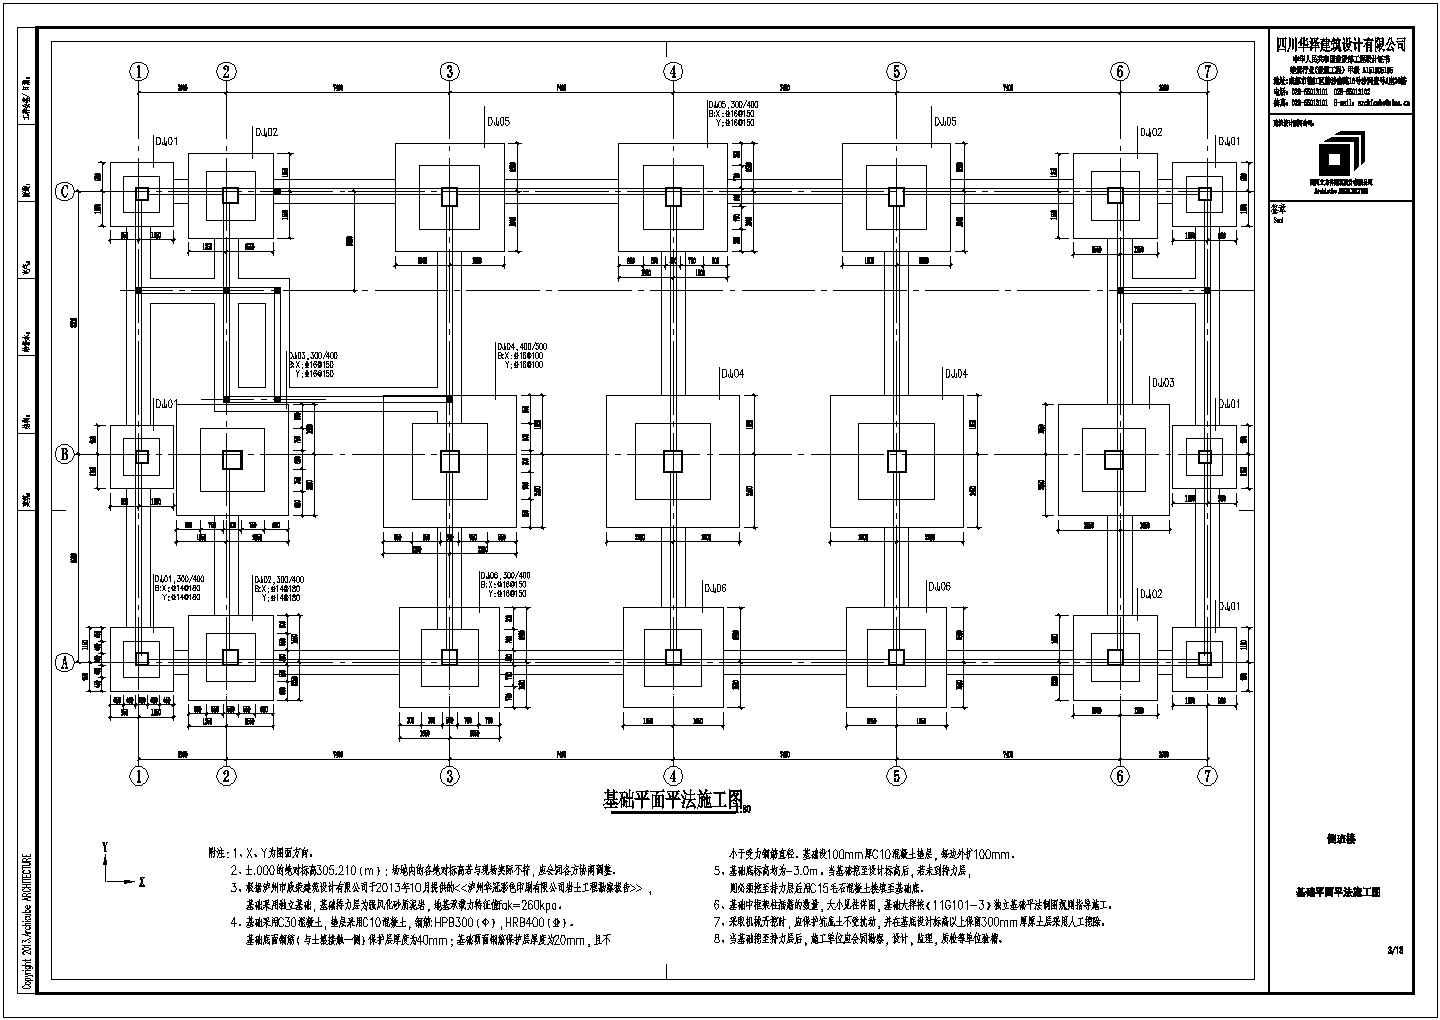 四川印刷厂厂前办公楼和倒班宿舍结构设计施工图